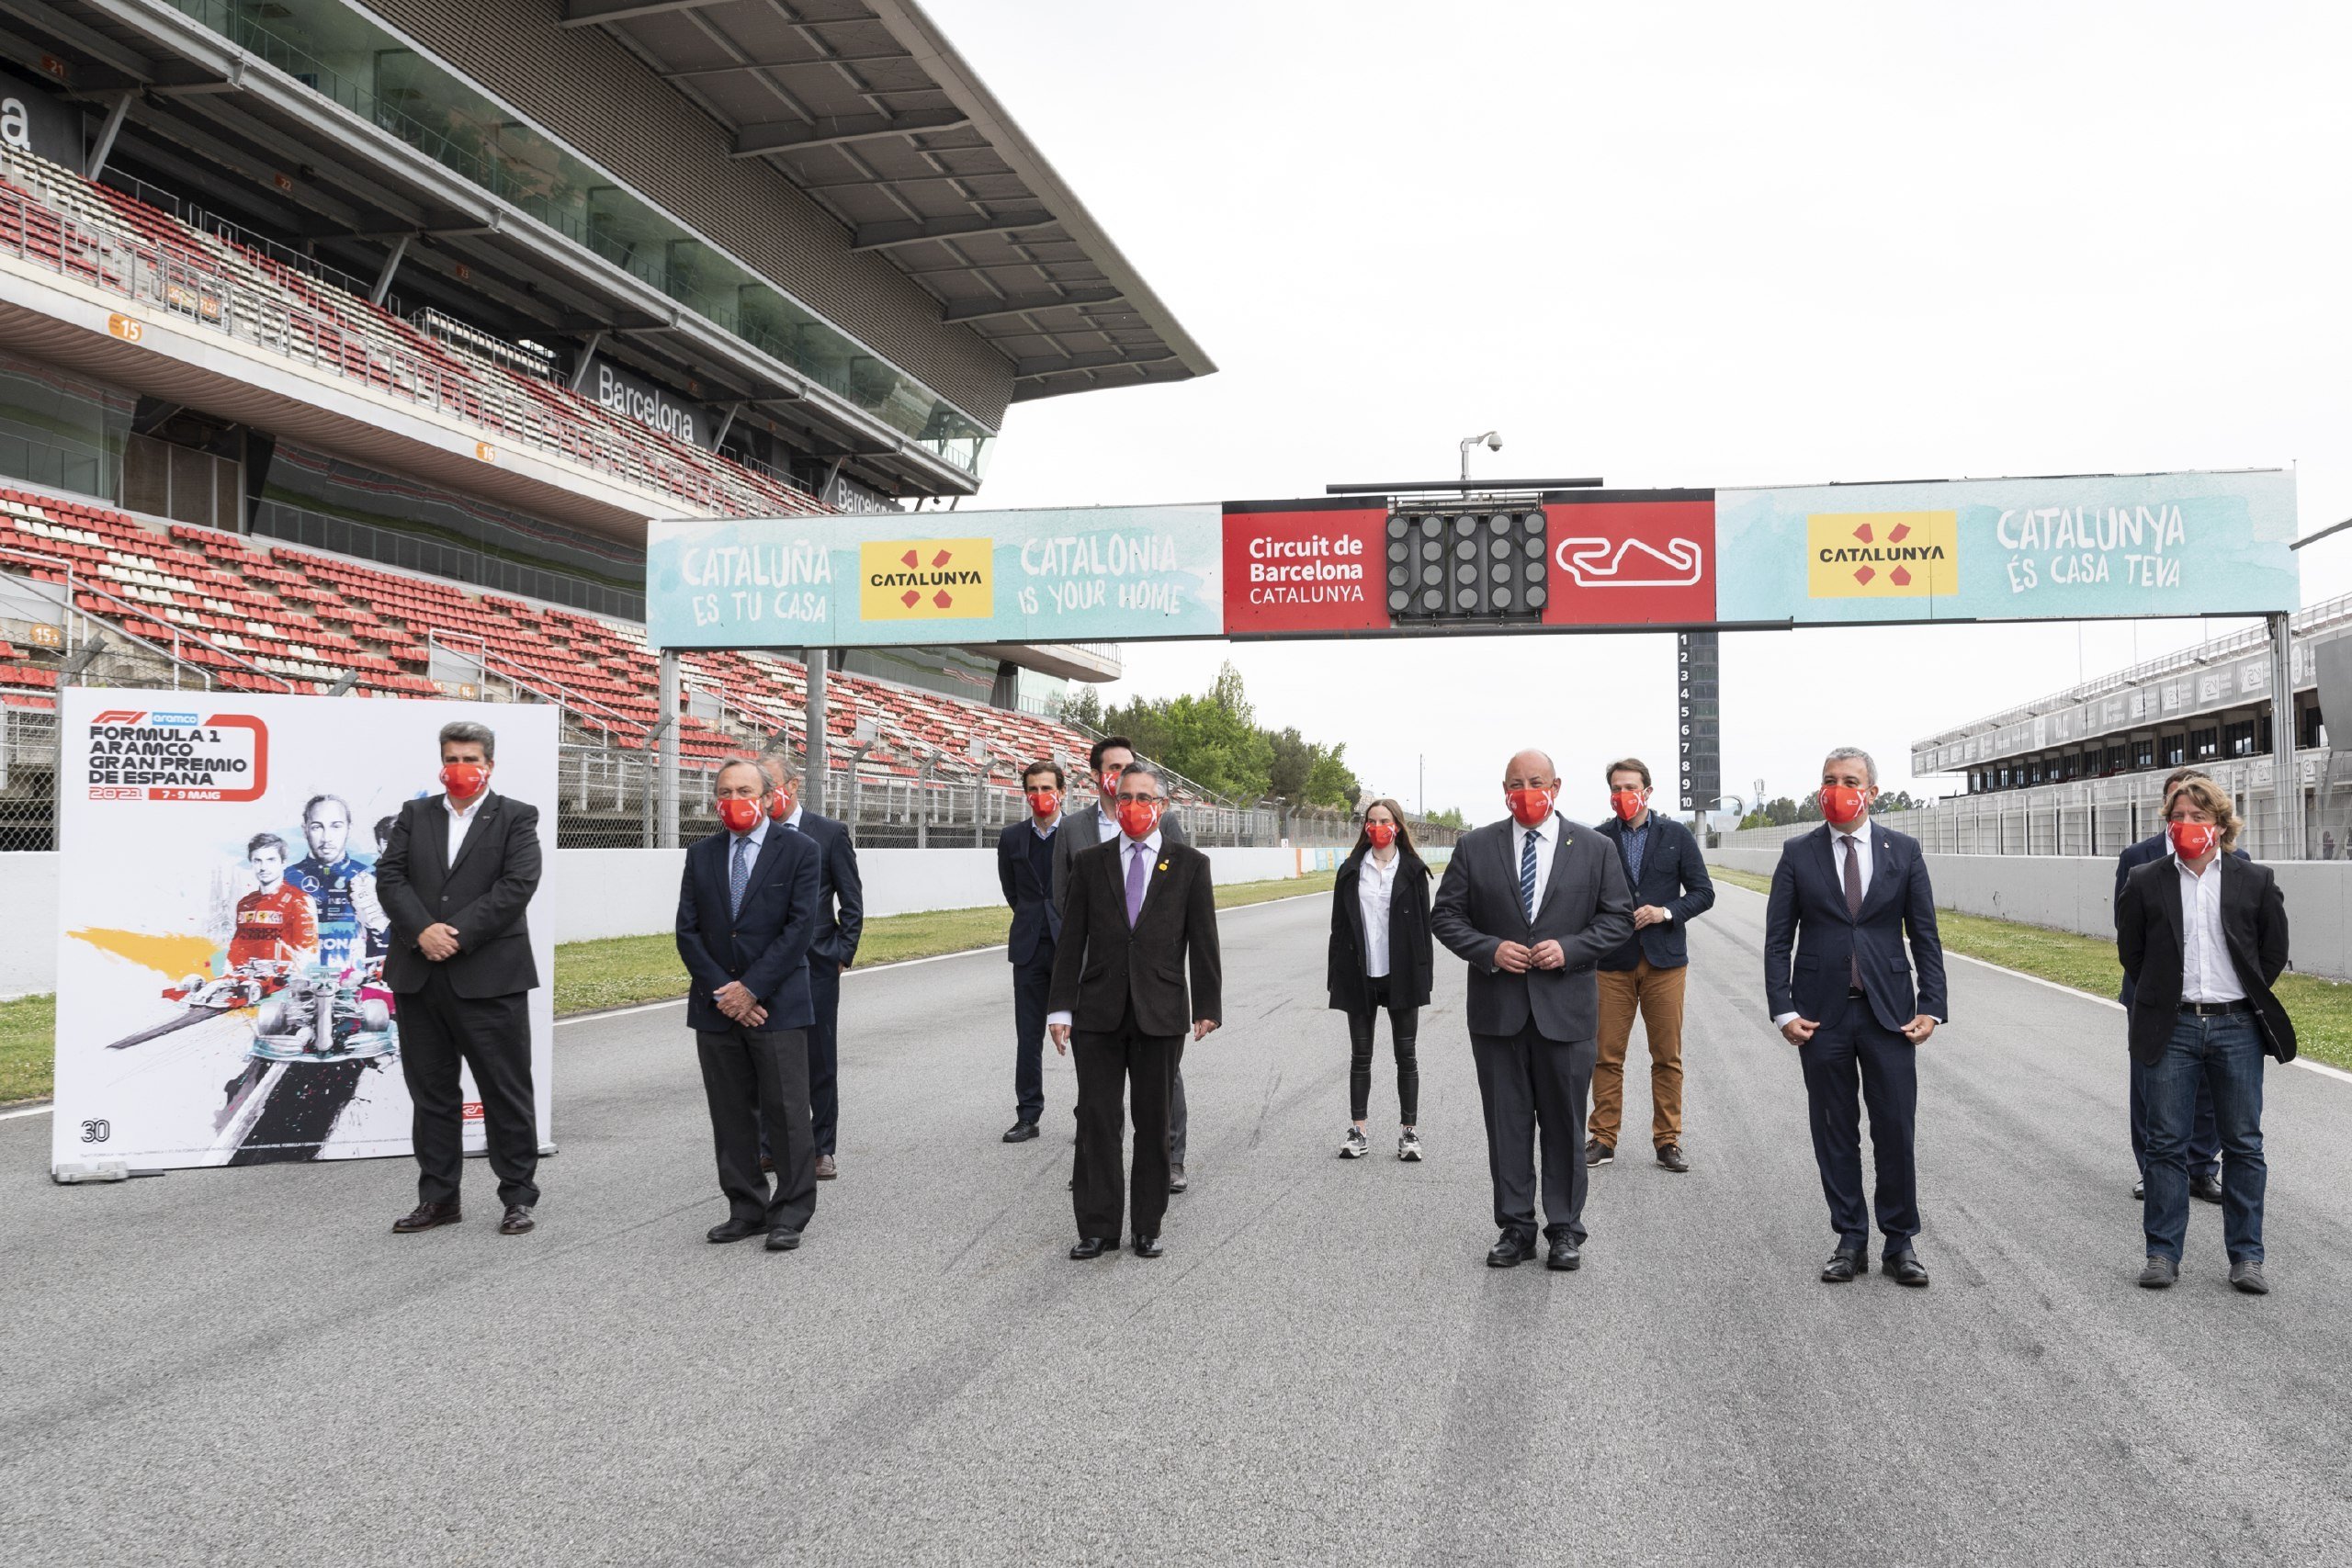 El Govern treballa perquè el Circuit de Catalunya sigui seu fixa de la Fórmula 1